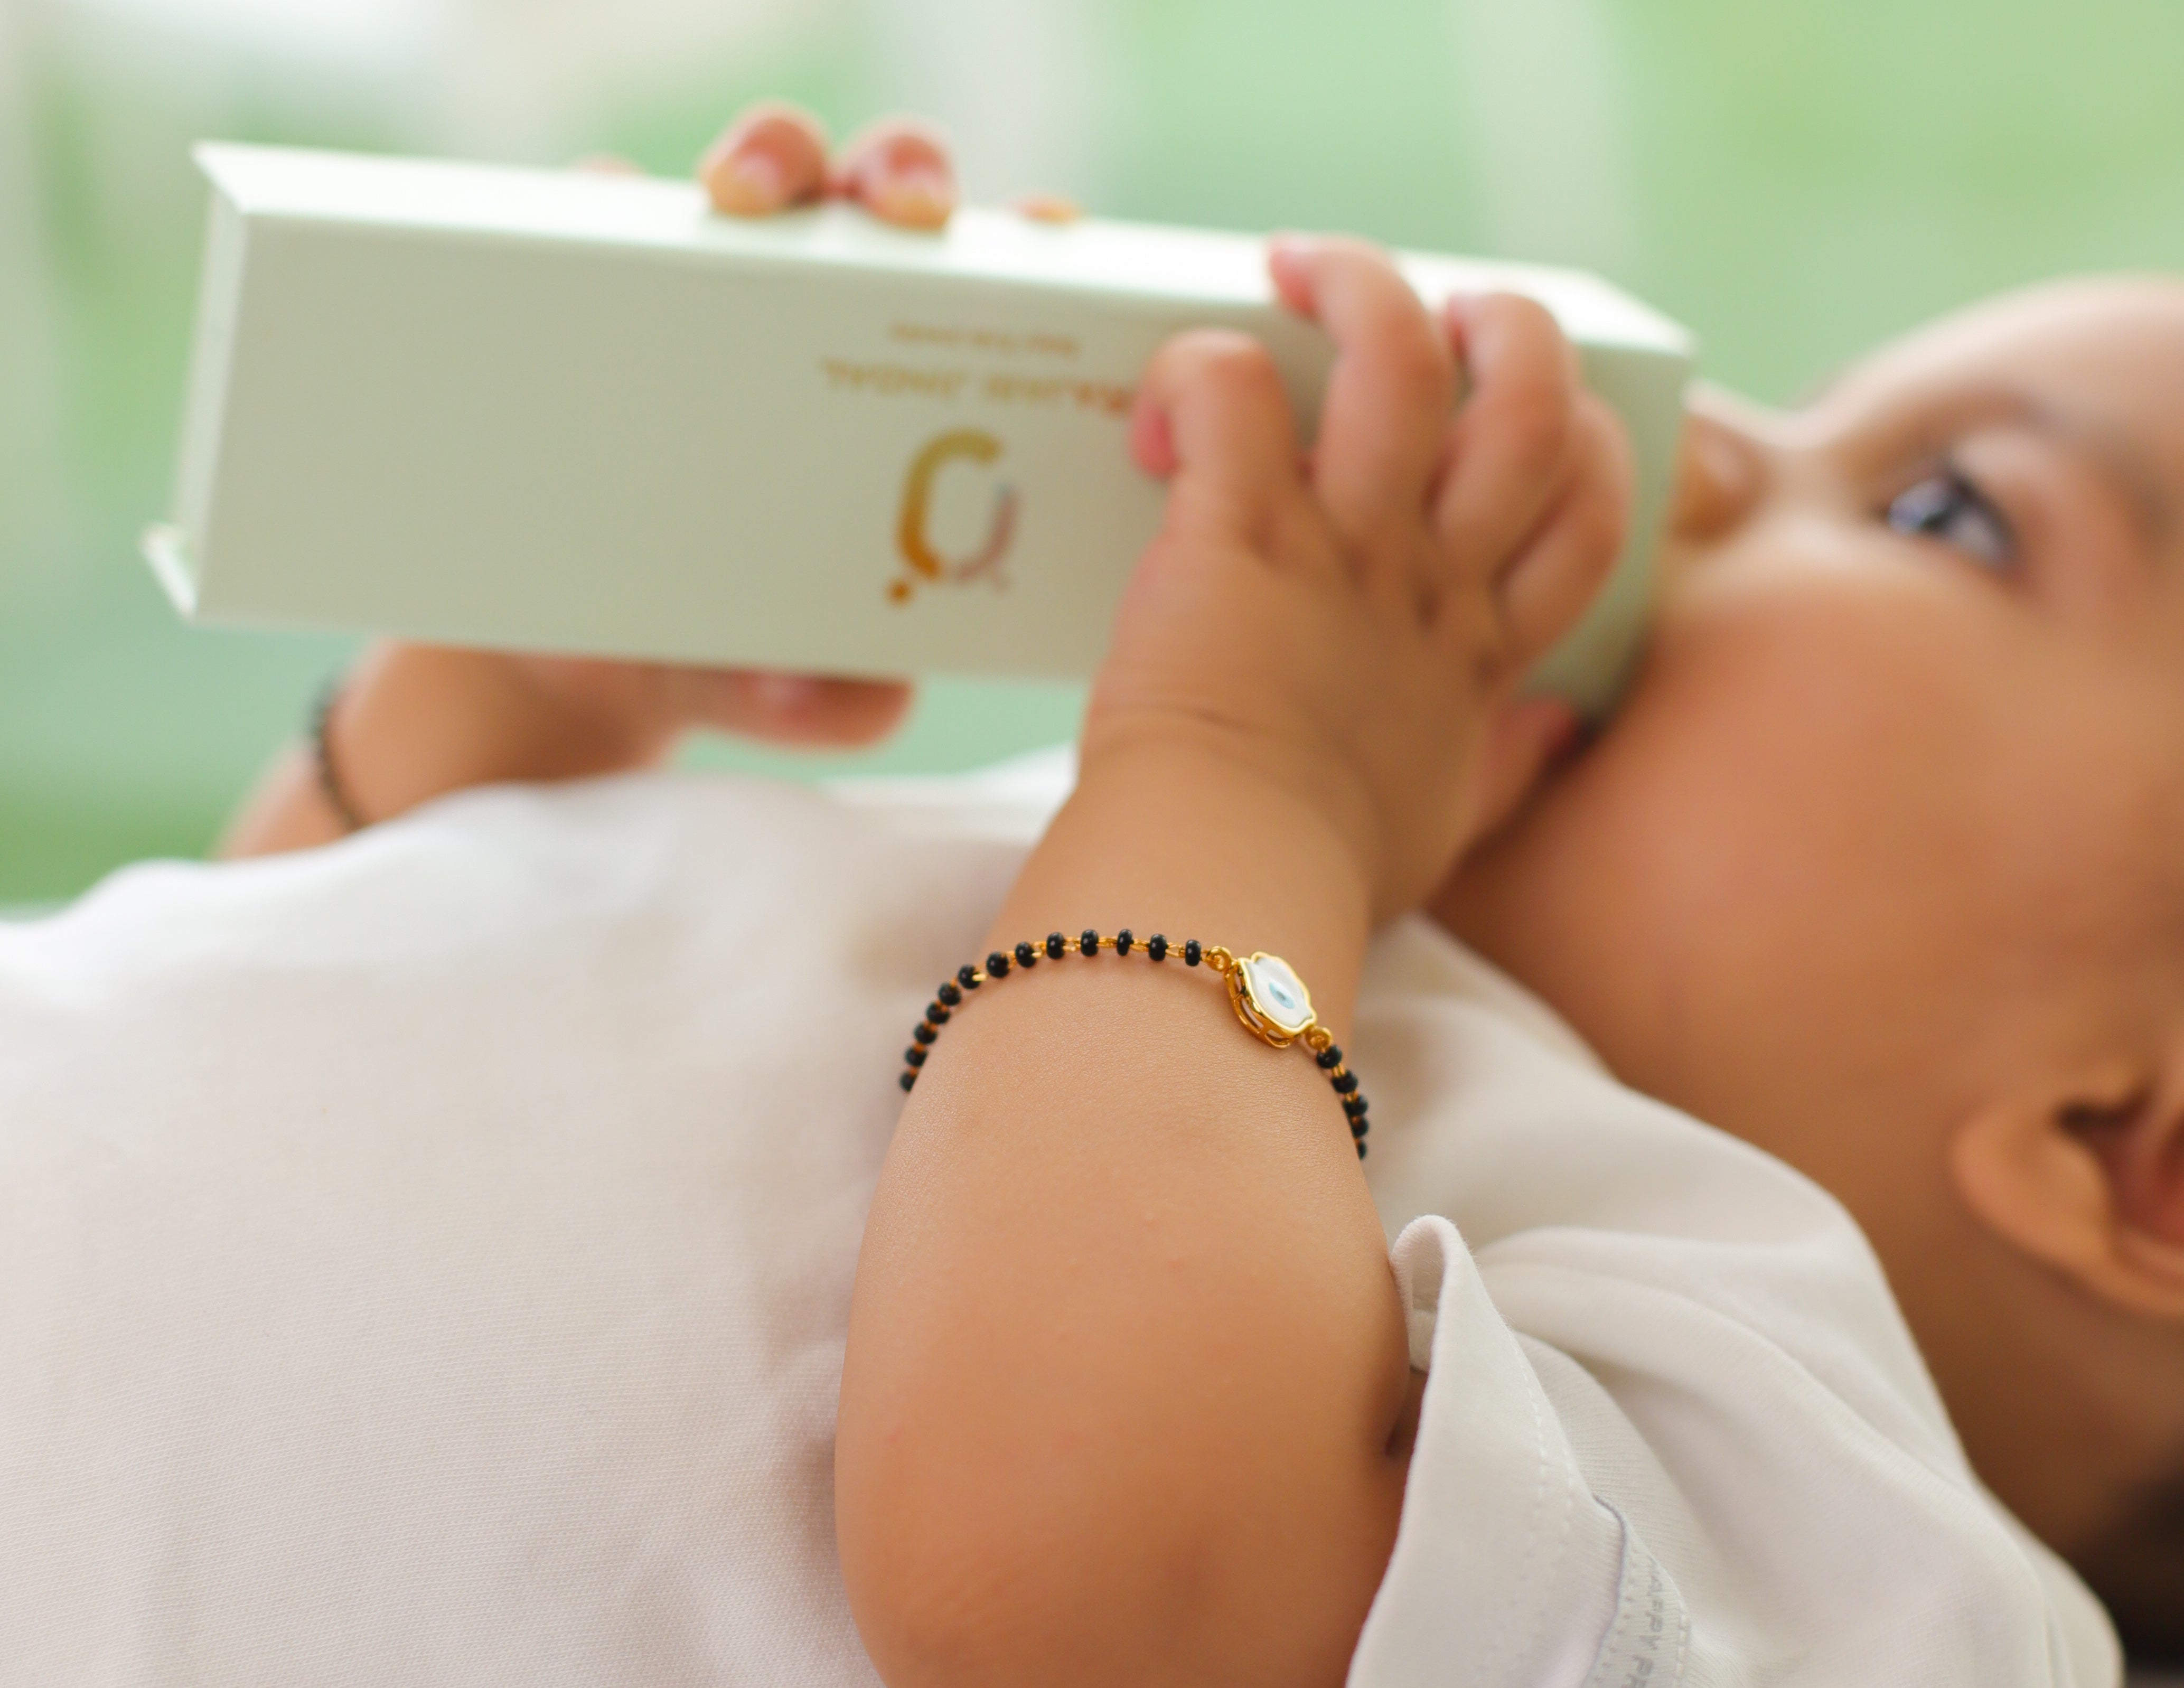 Baby Earrings | Infant Earrings | Best Designs For Newborn Babies | AJS